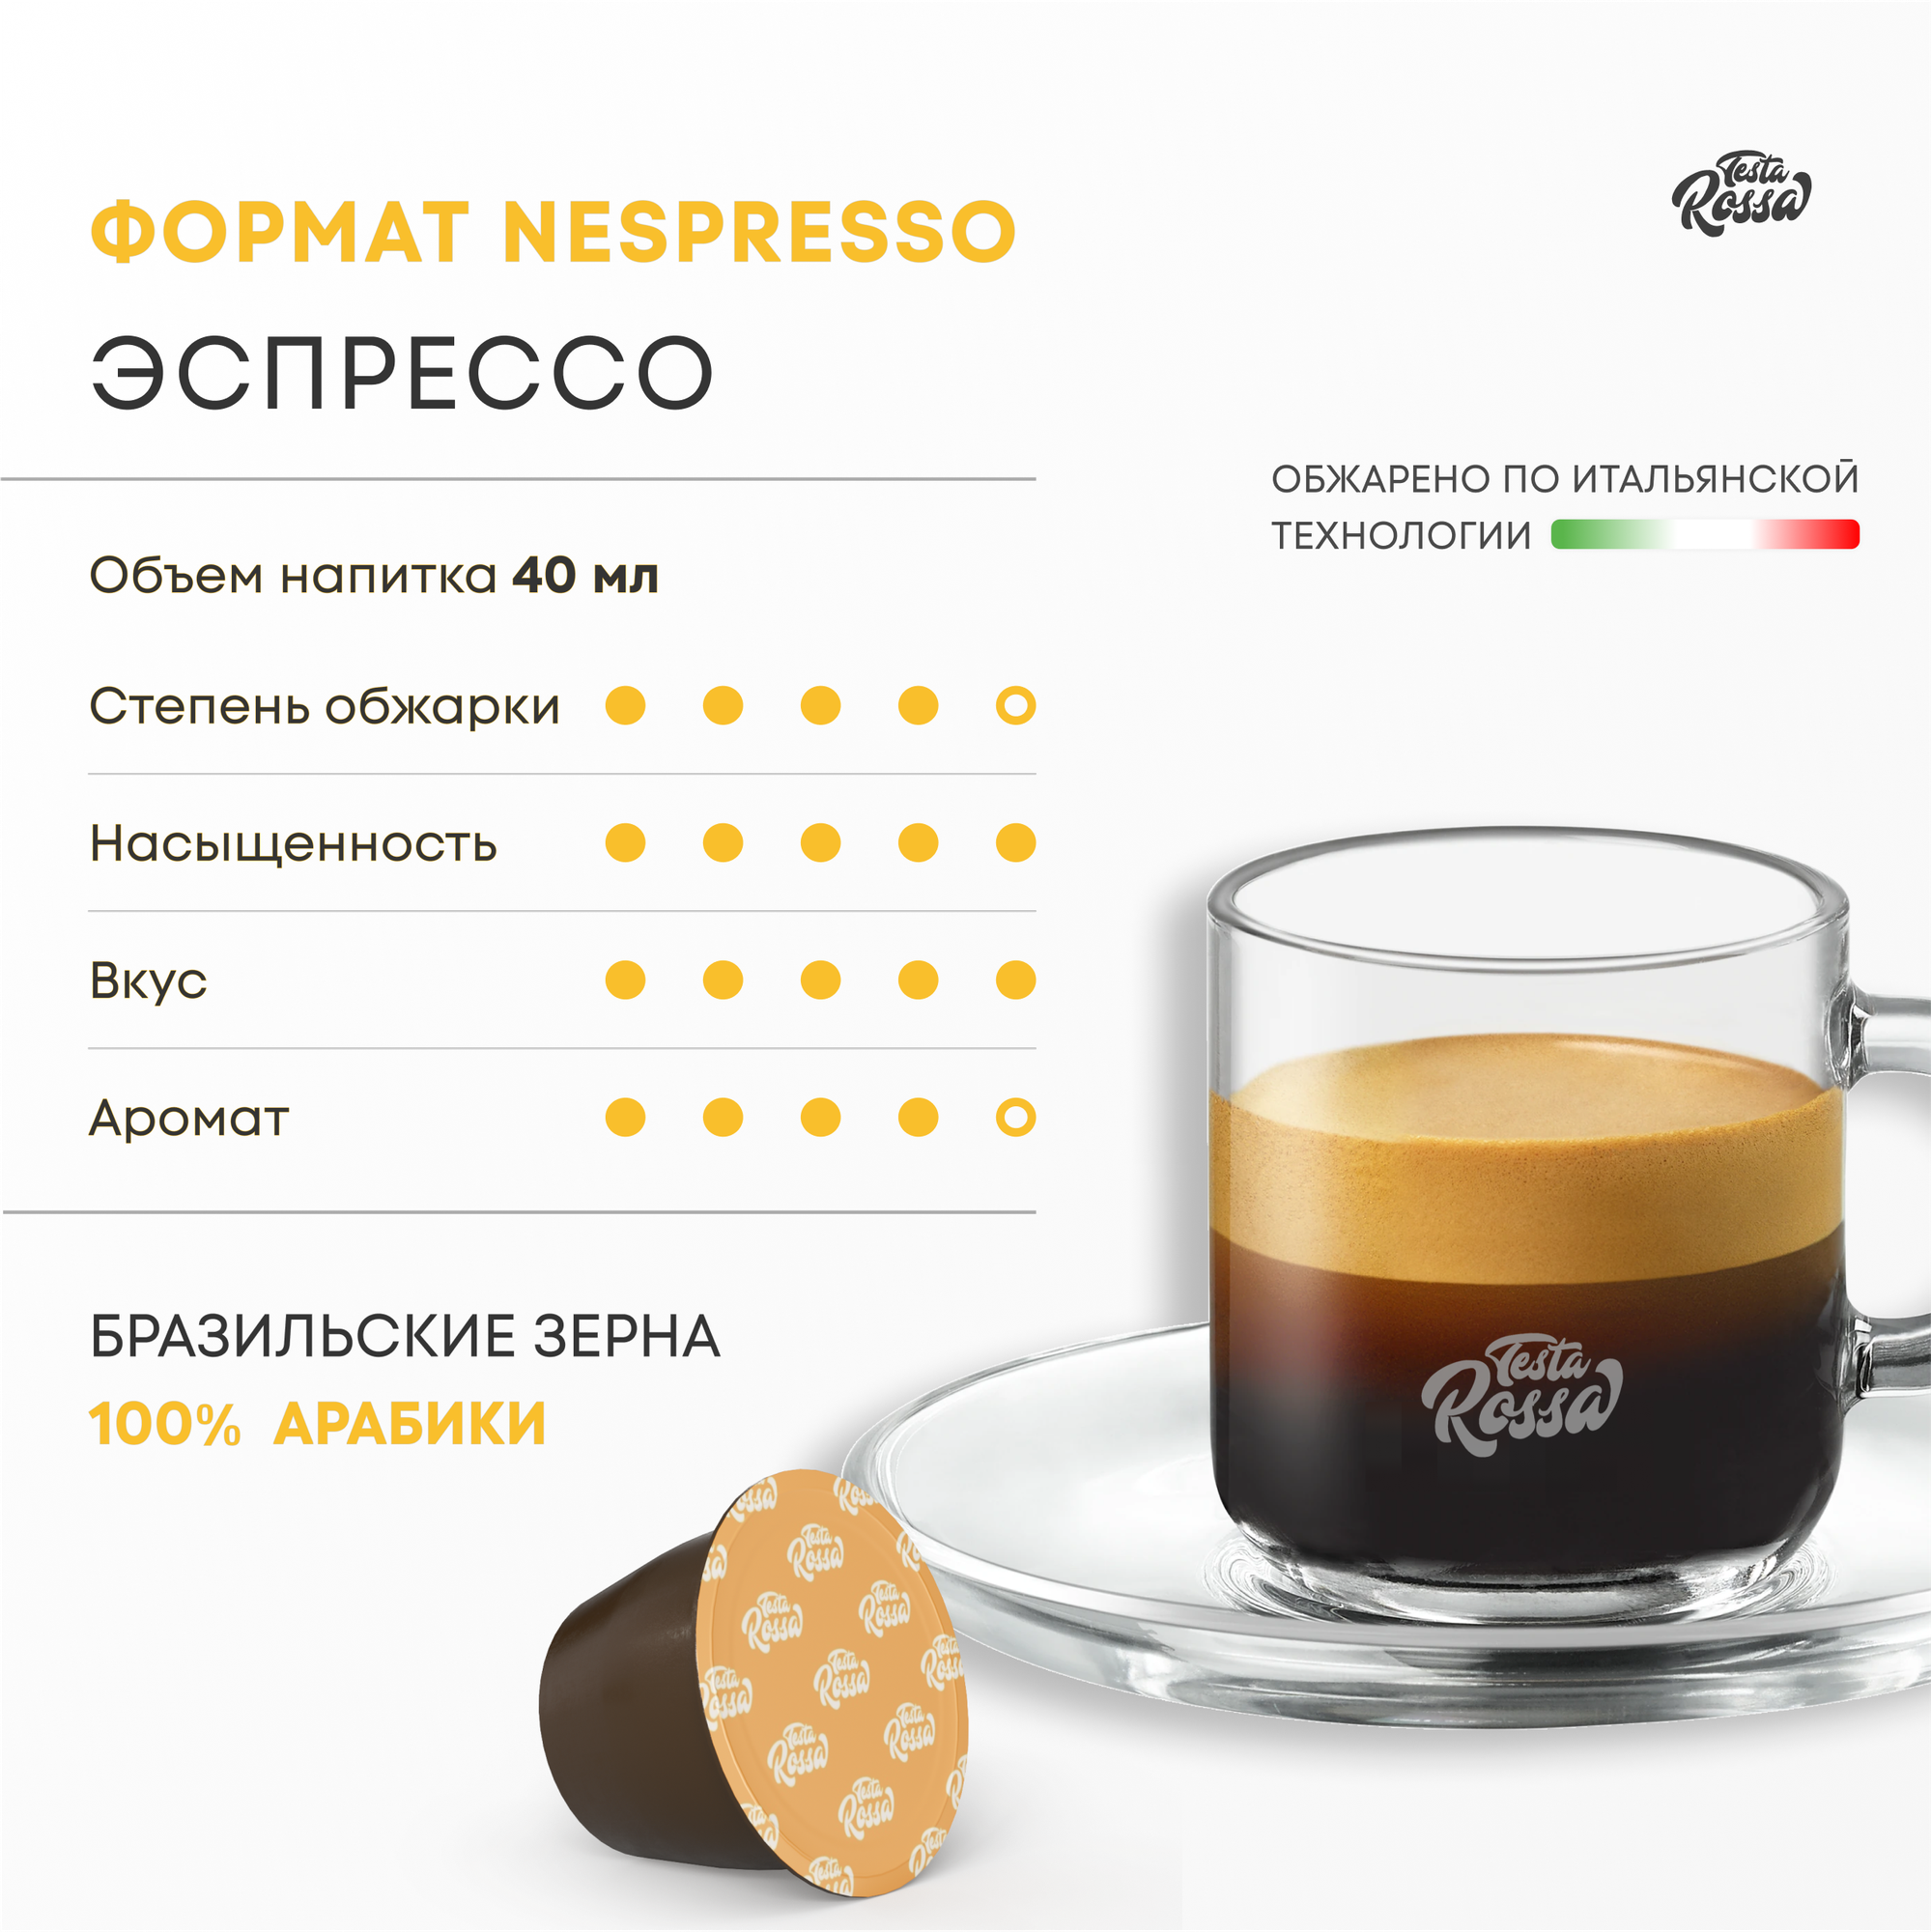 Эспрессо Арабика 100% - Капсулы Testa Rossa - 50 шт, набор кофе в капсулах неспрессо, для кофемашины NESPRESSO - фотография № 2